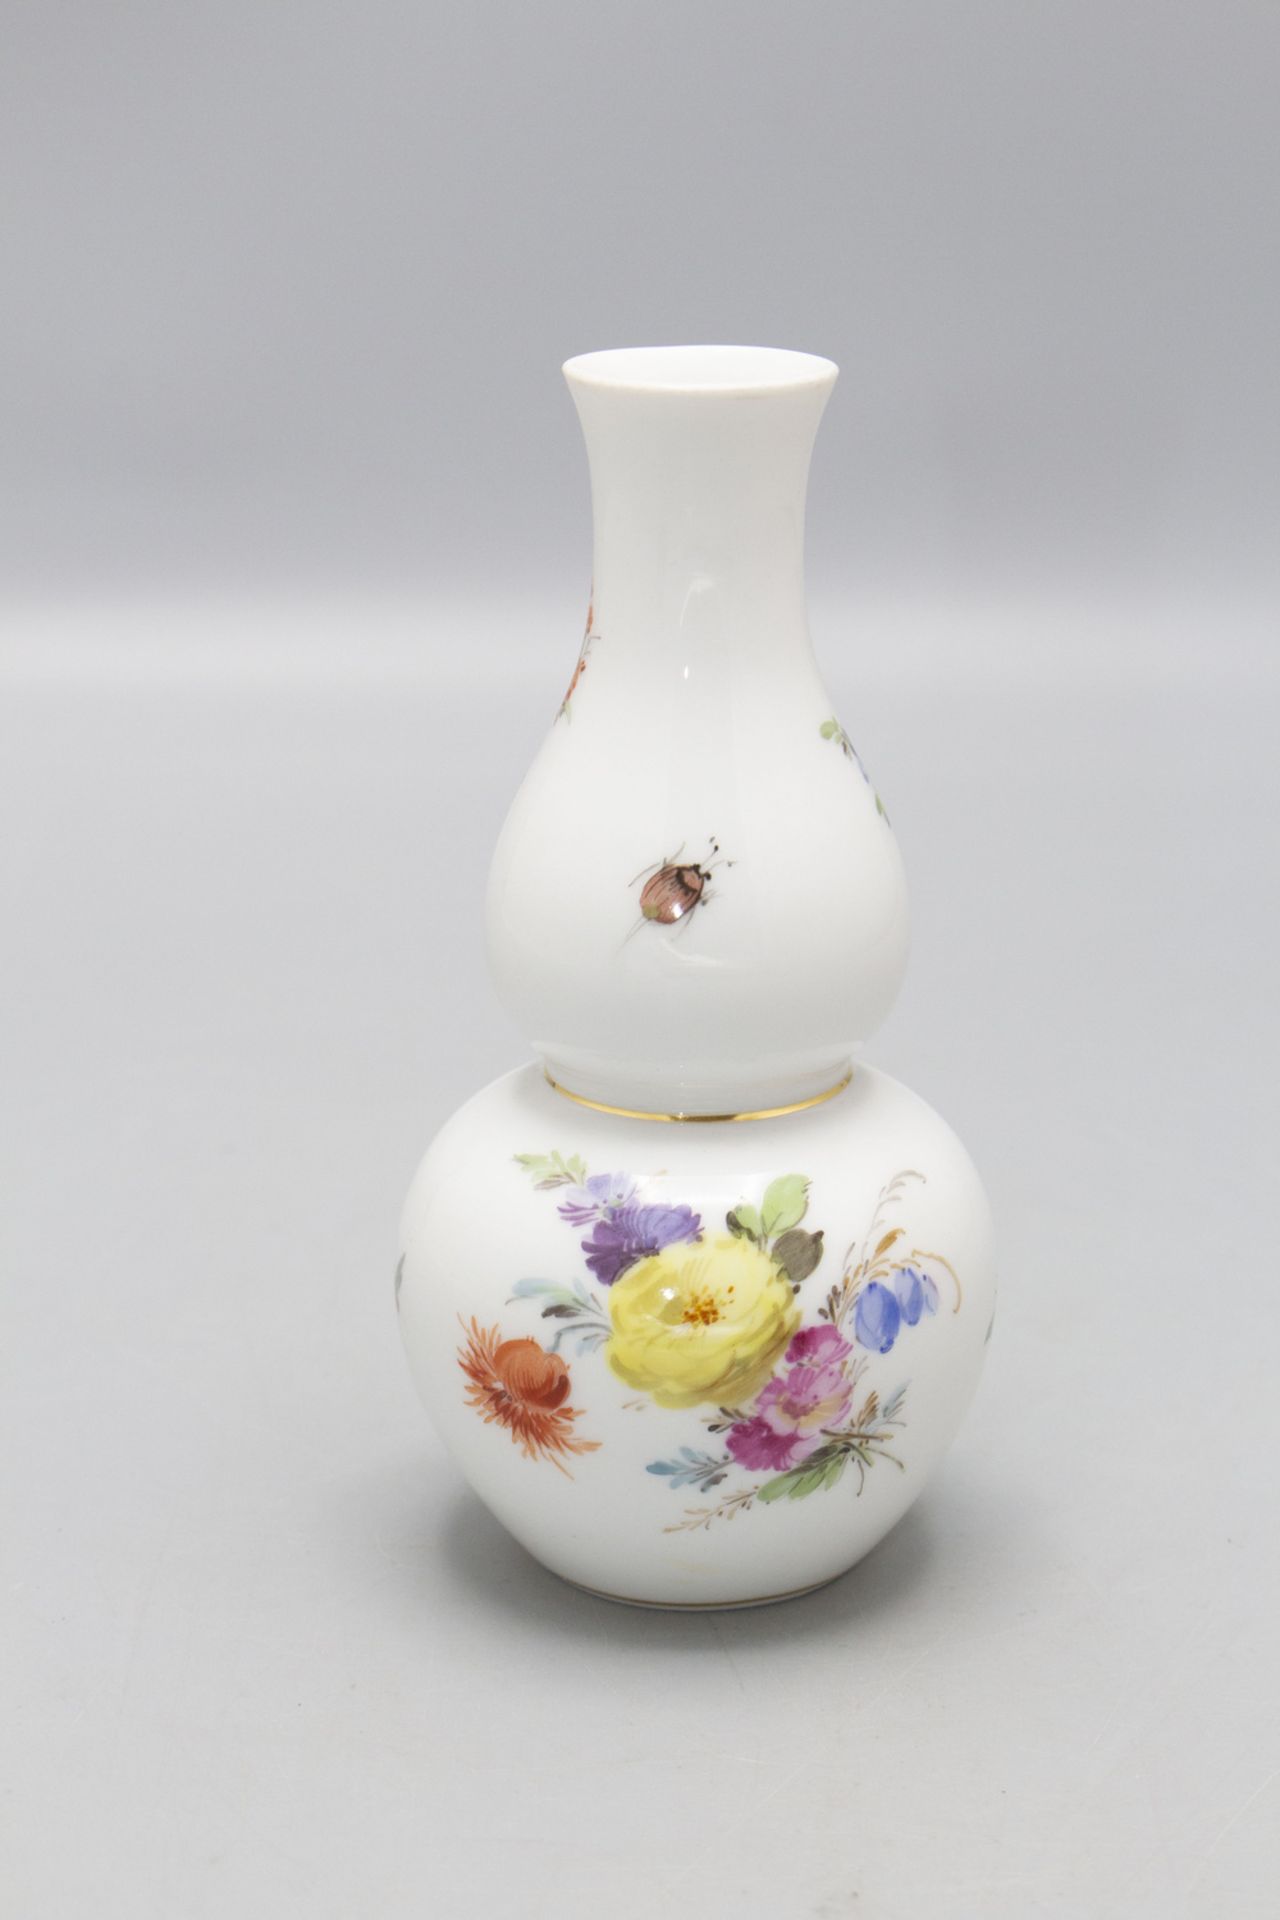 Kürbisvase mit Blumenbouquets und Insekten / A vase with flowers and insects, Meissen, um 1860 - Bild 2 aus 3